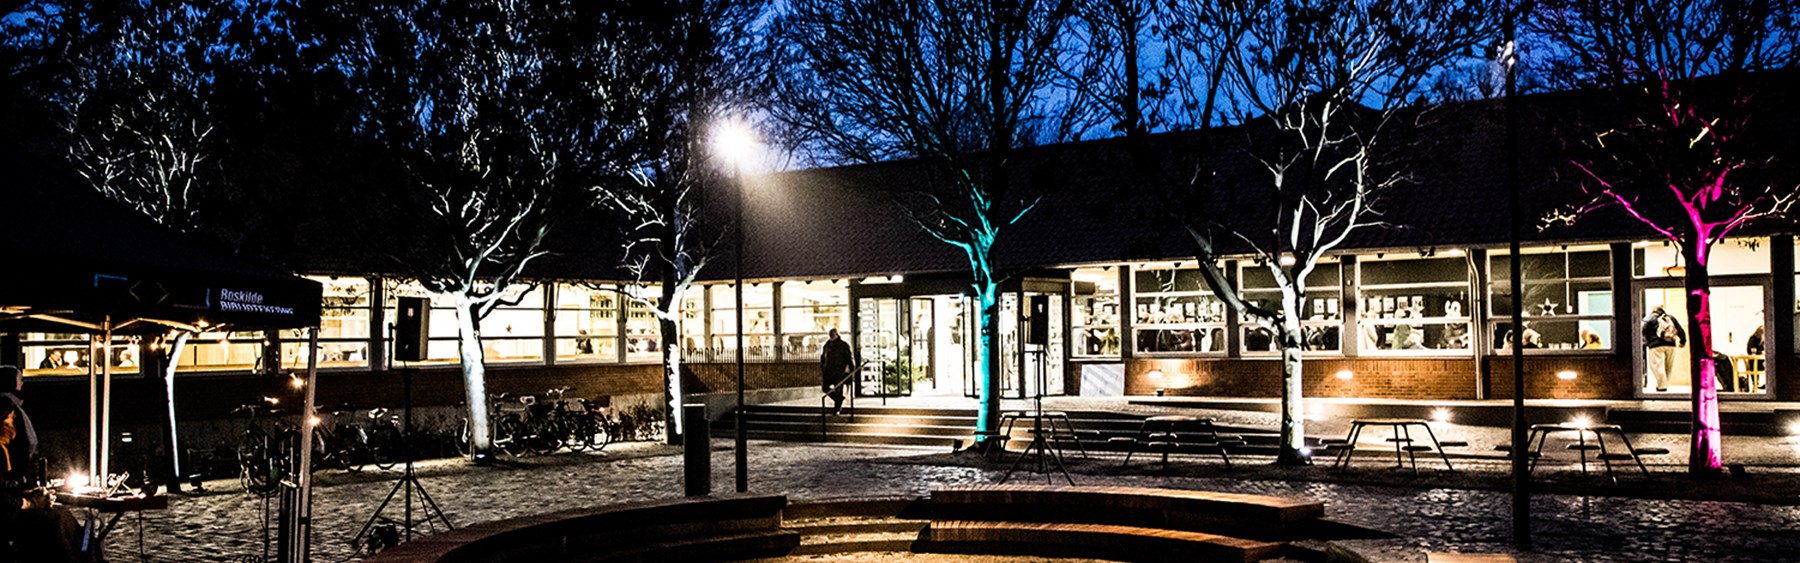 Roskilde Bibliotek